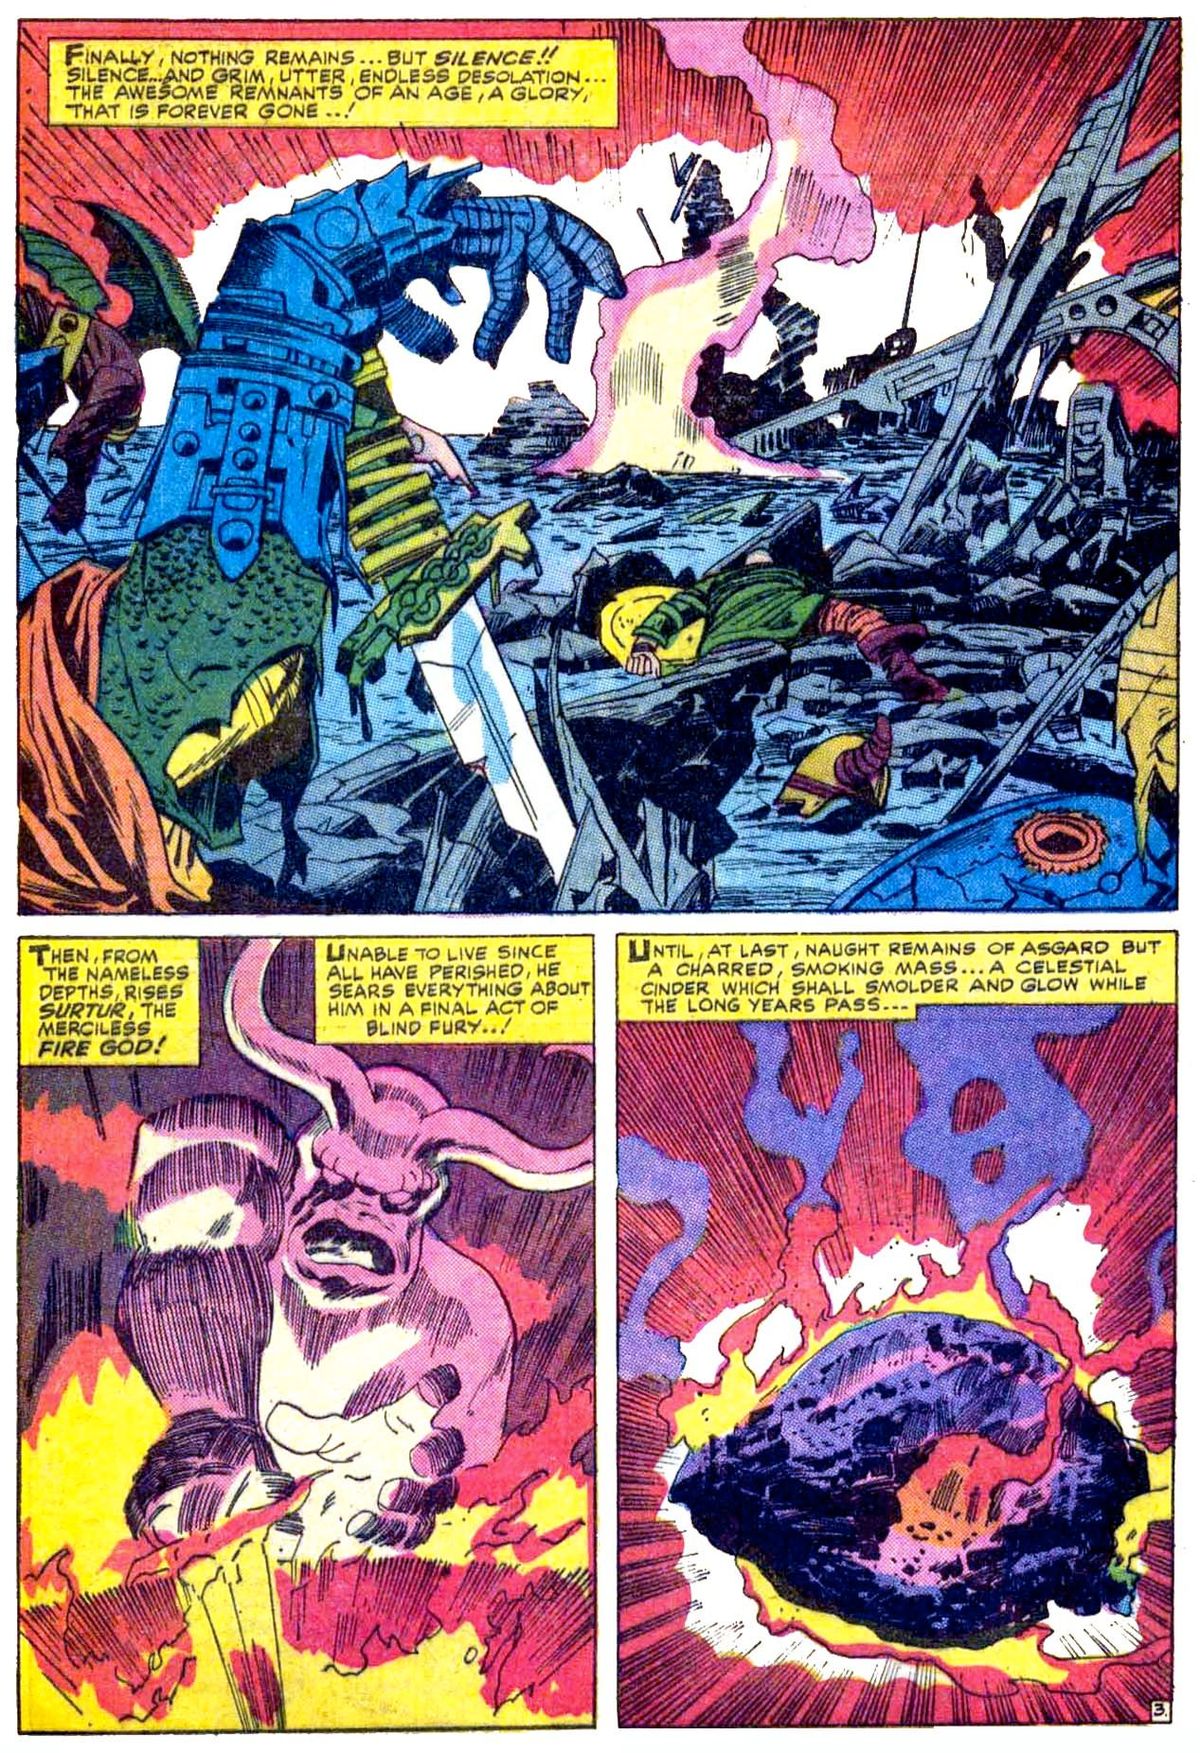 Surturnak, szeretettel: Ki a pokol Thor tüzes ellensége?